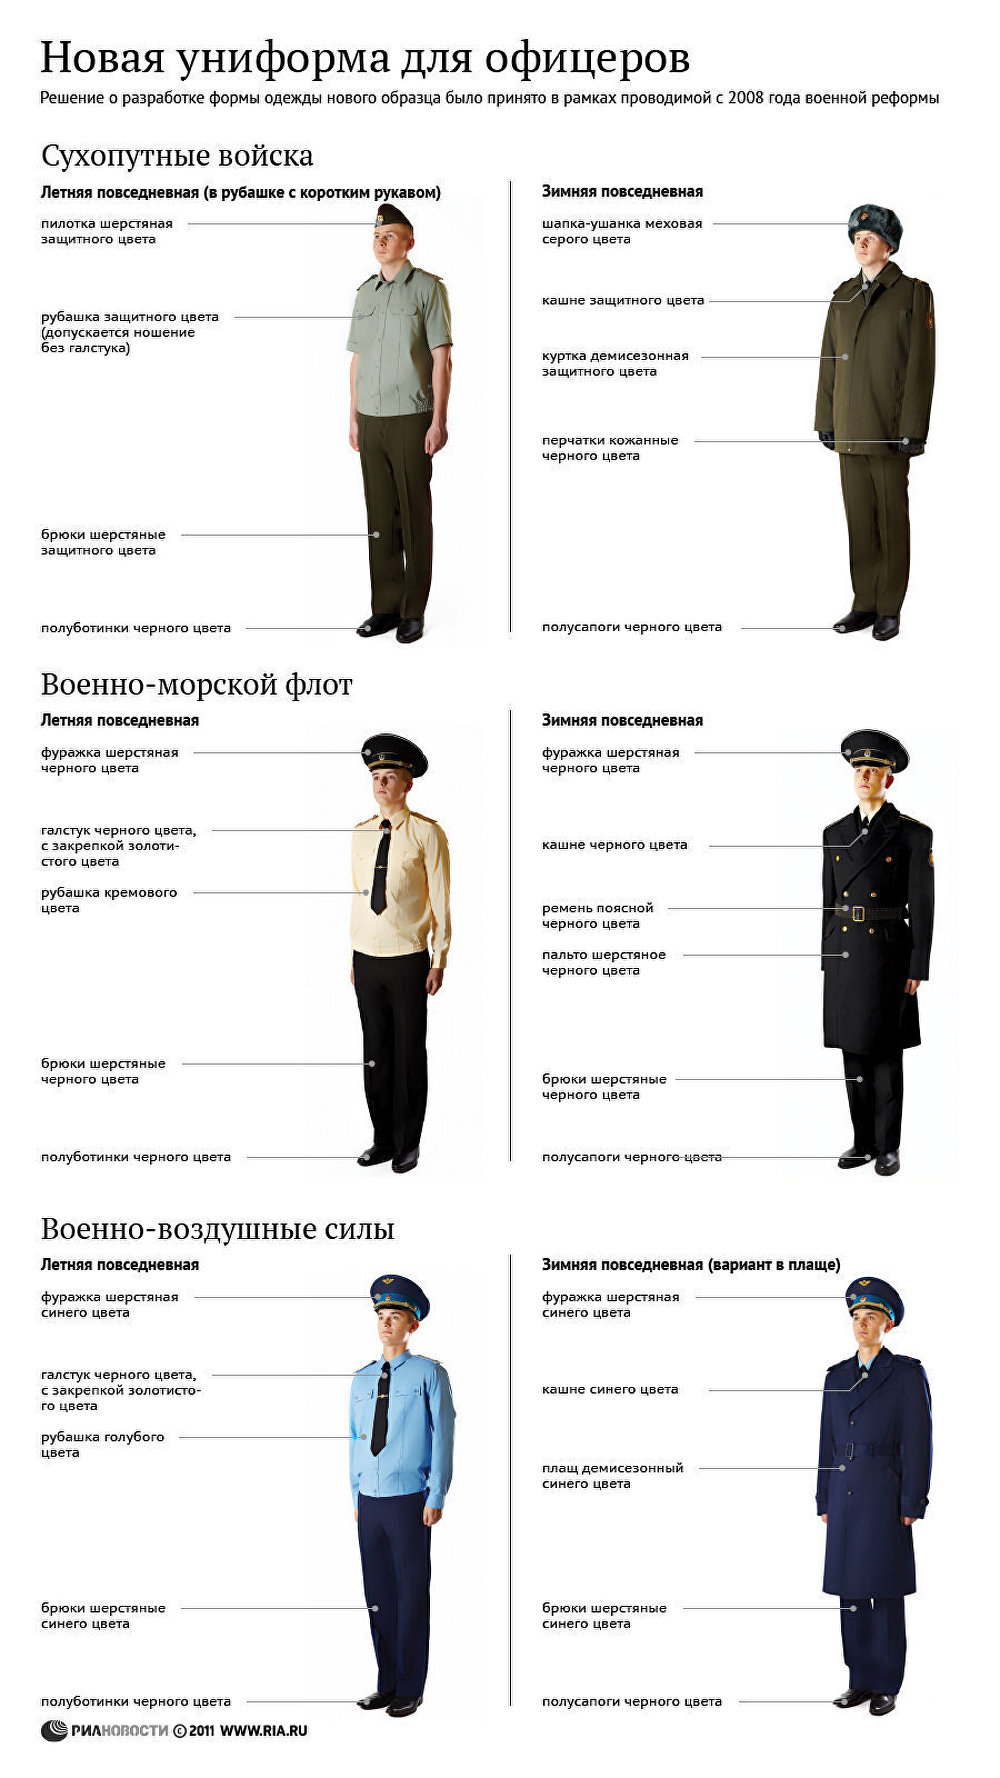 Повседневная форма одежды военнослужащих ФСБ